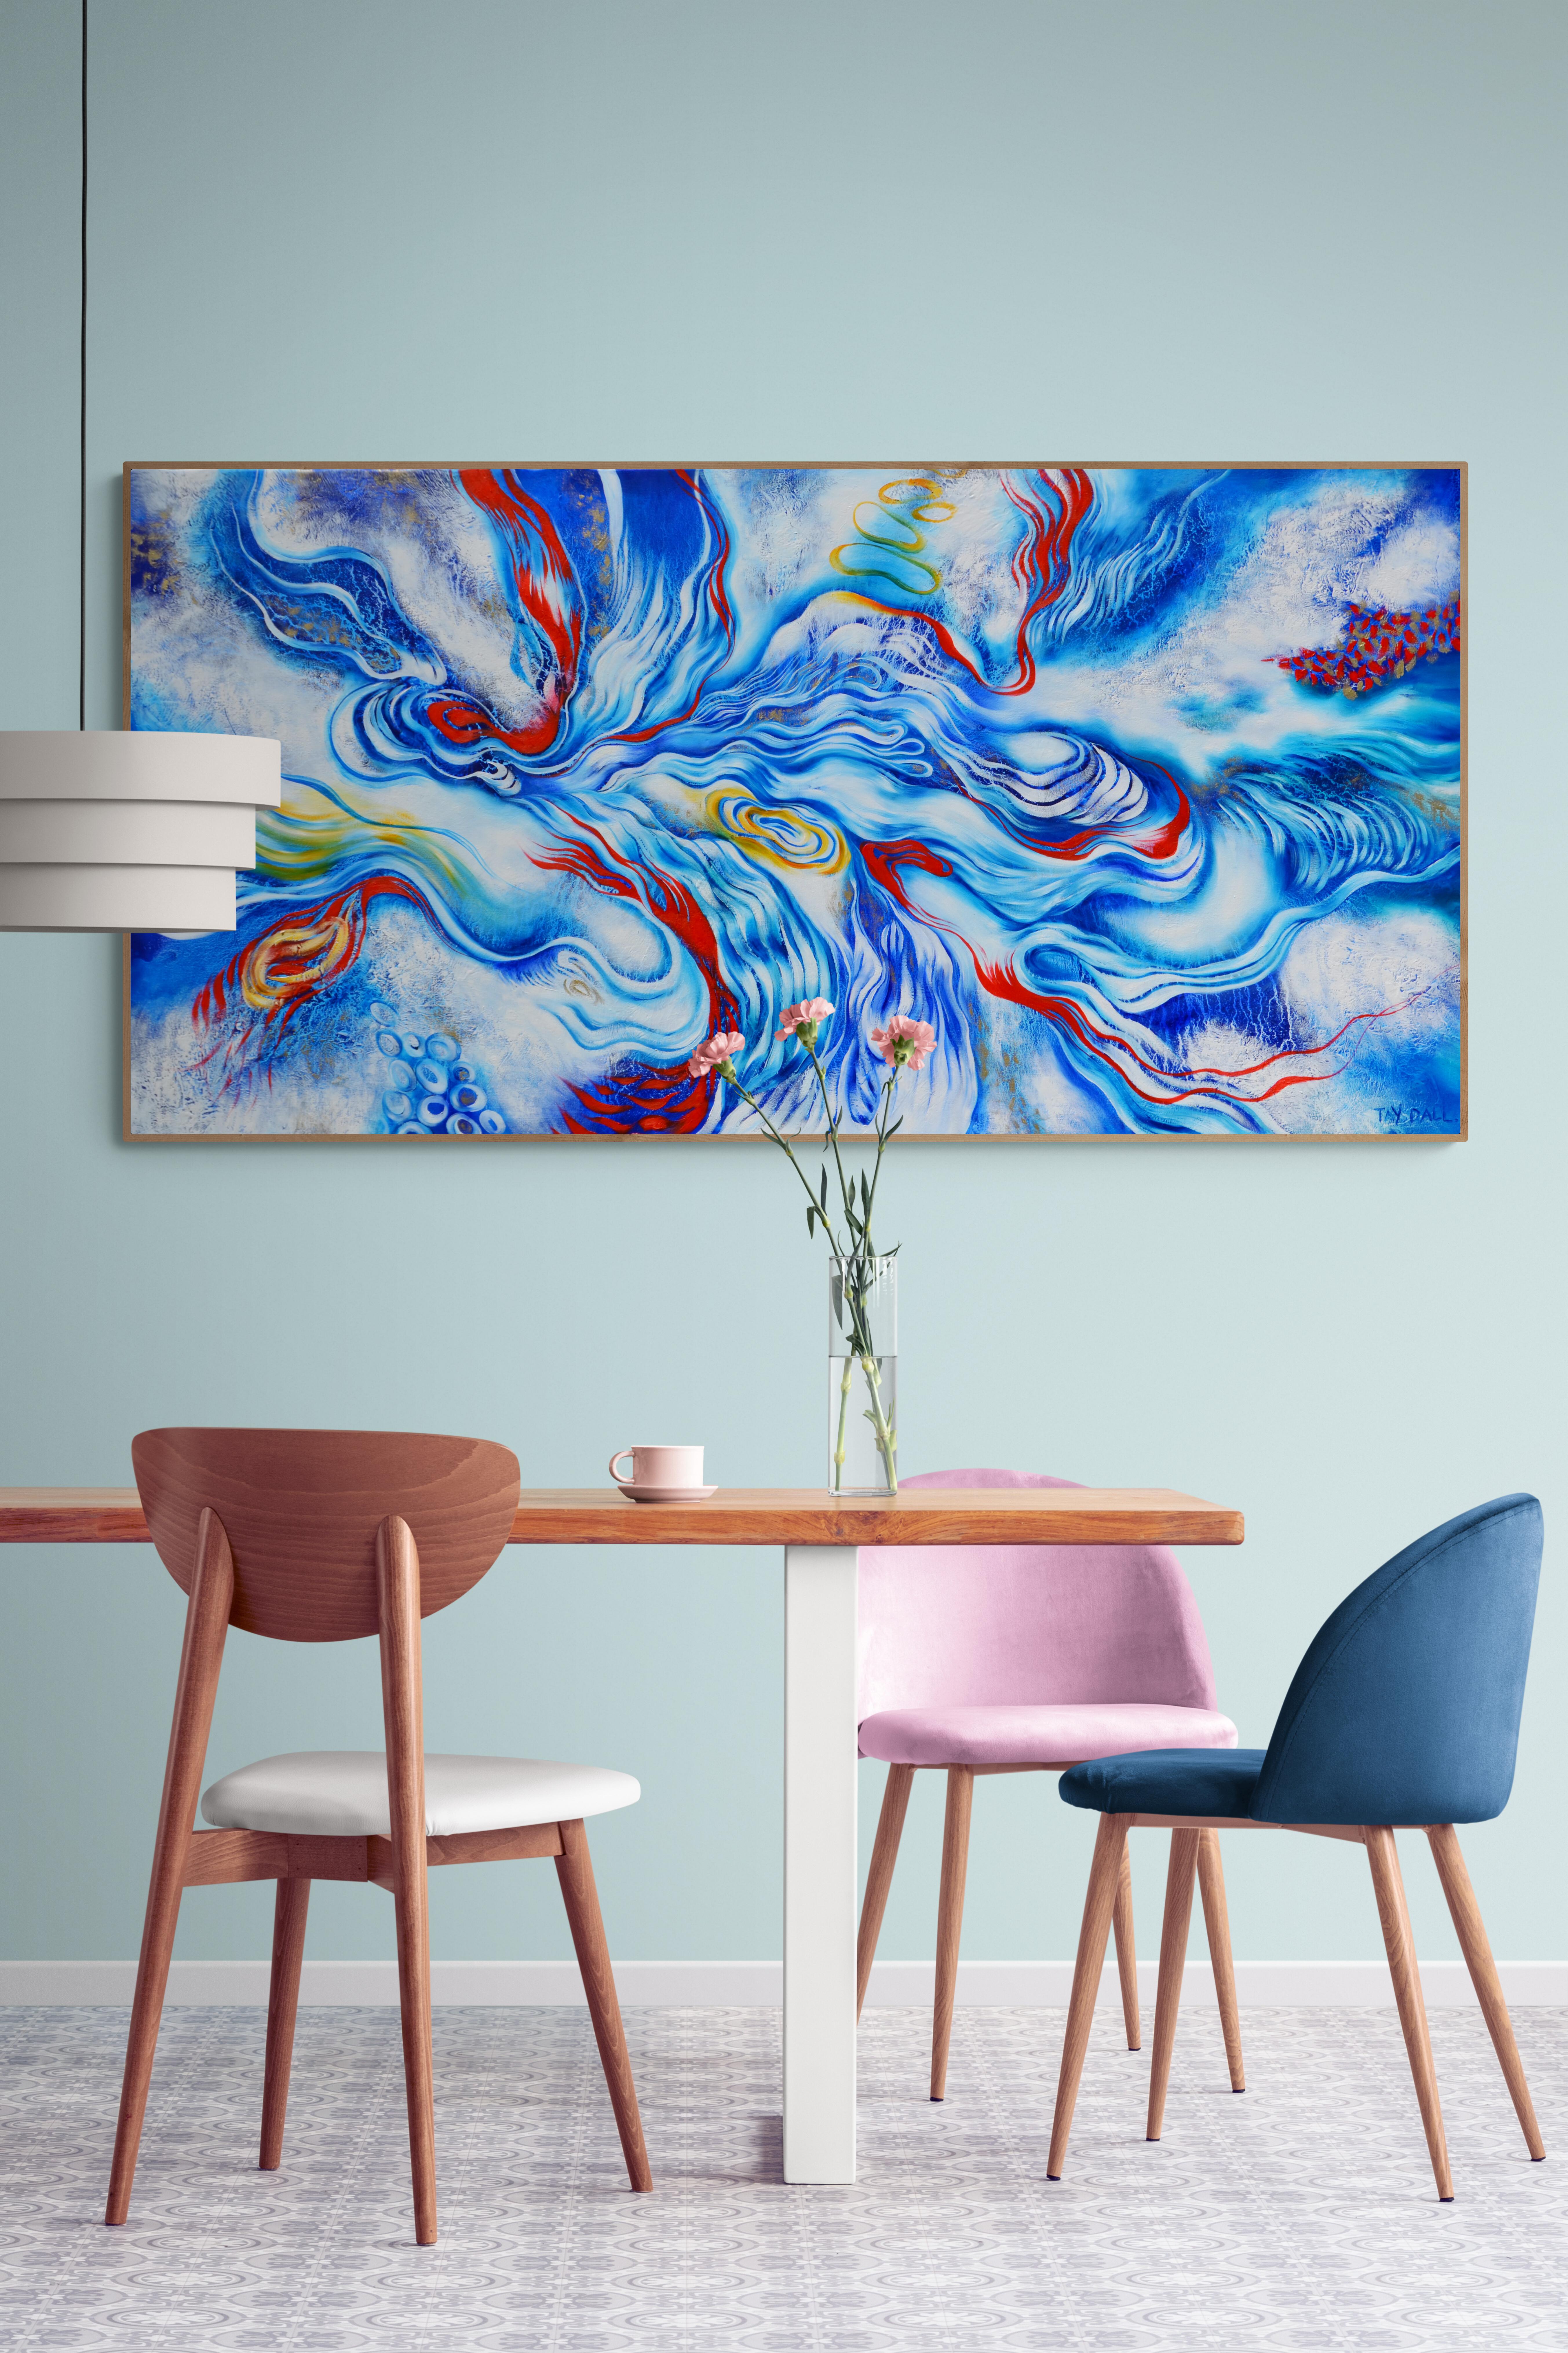 Peinture à l'huile abstraite bleue « River Flow Anew 2 » (Fleure d'un nouveau rivage) - Contemporain Painting par Tay Dall